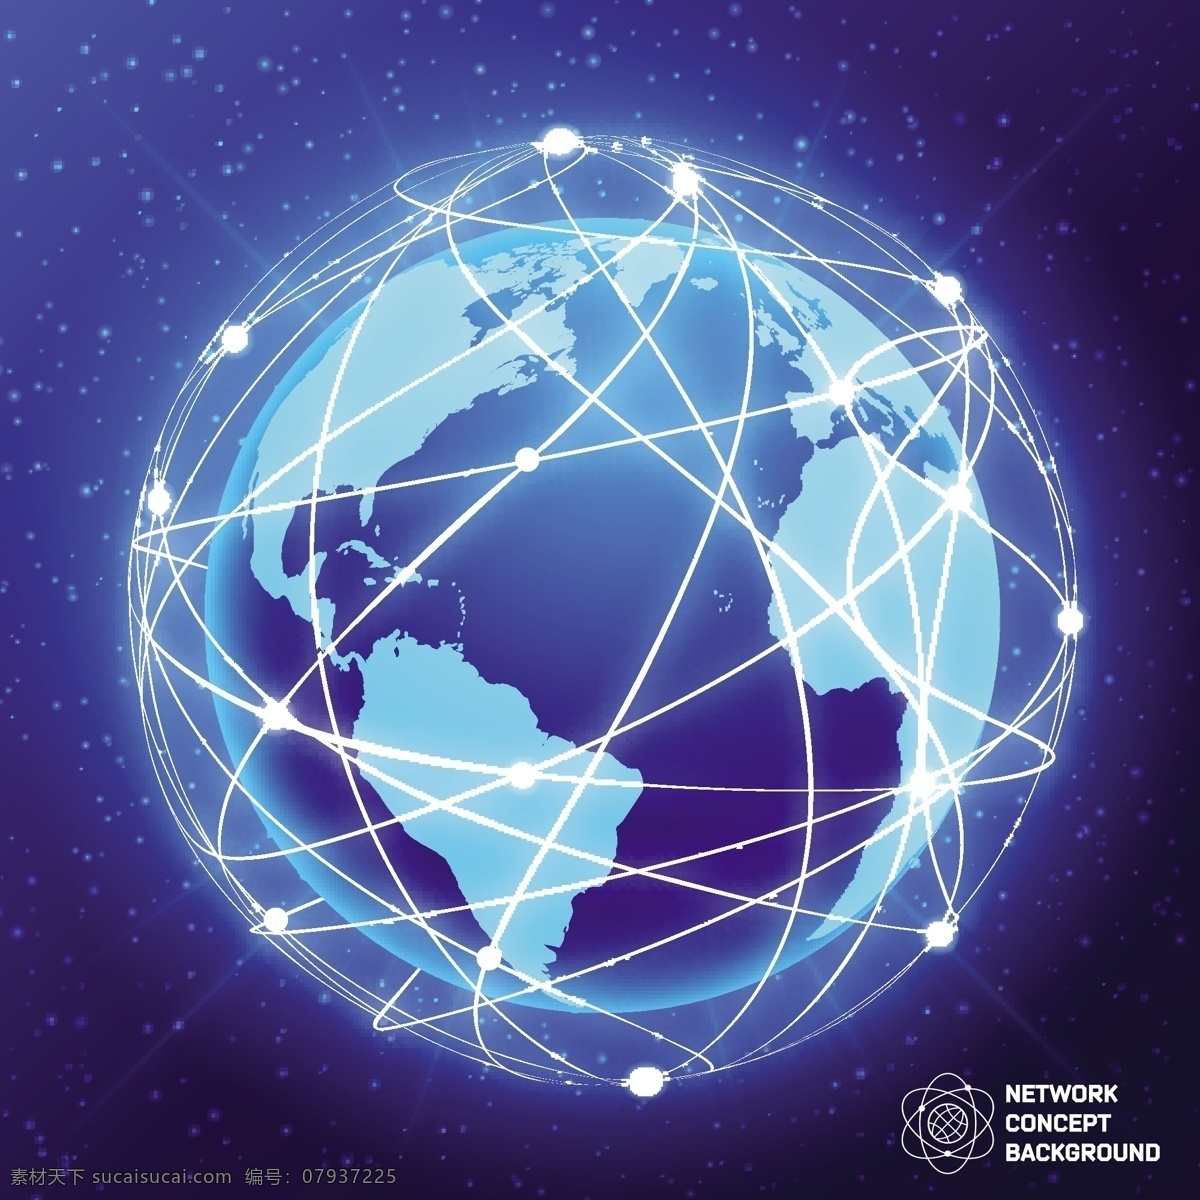 地球 科技 蓝色 背景图片 矢量 模板 模版 背景图 大数据 人工智能 云计算 物联网 点线 连接 联接 世界 全球 矢量素材 现代科技